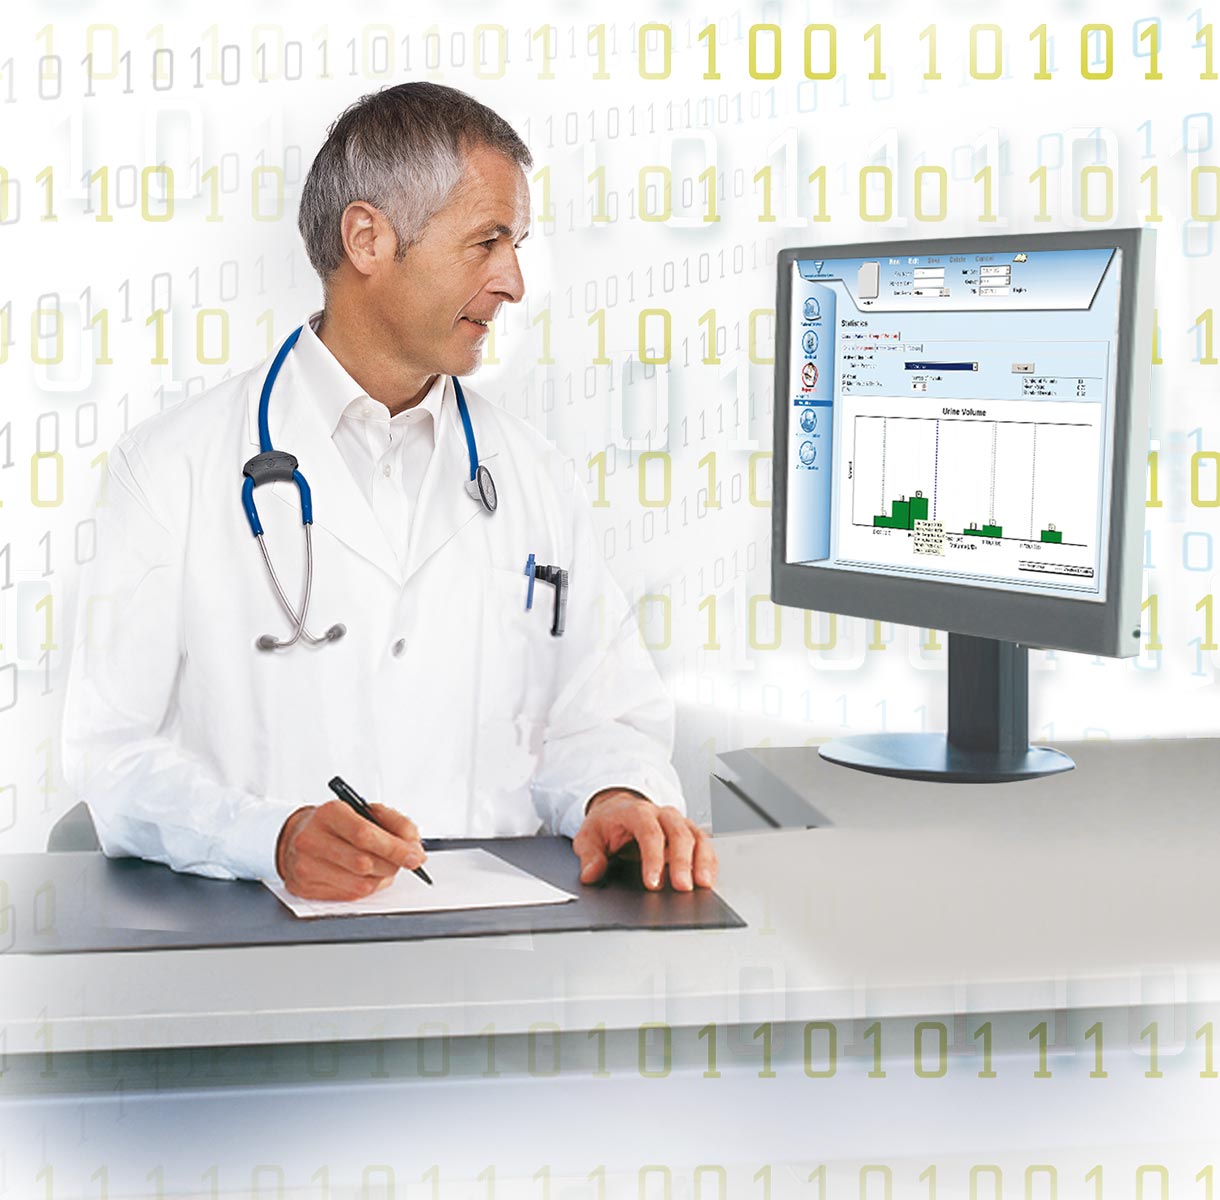 Médico mirando los datos en un monitor